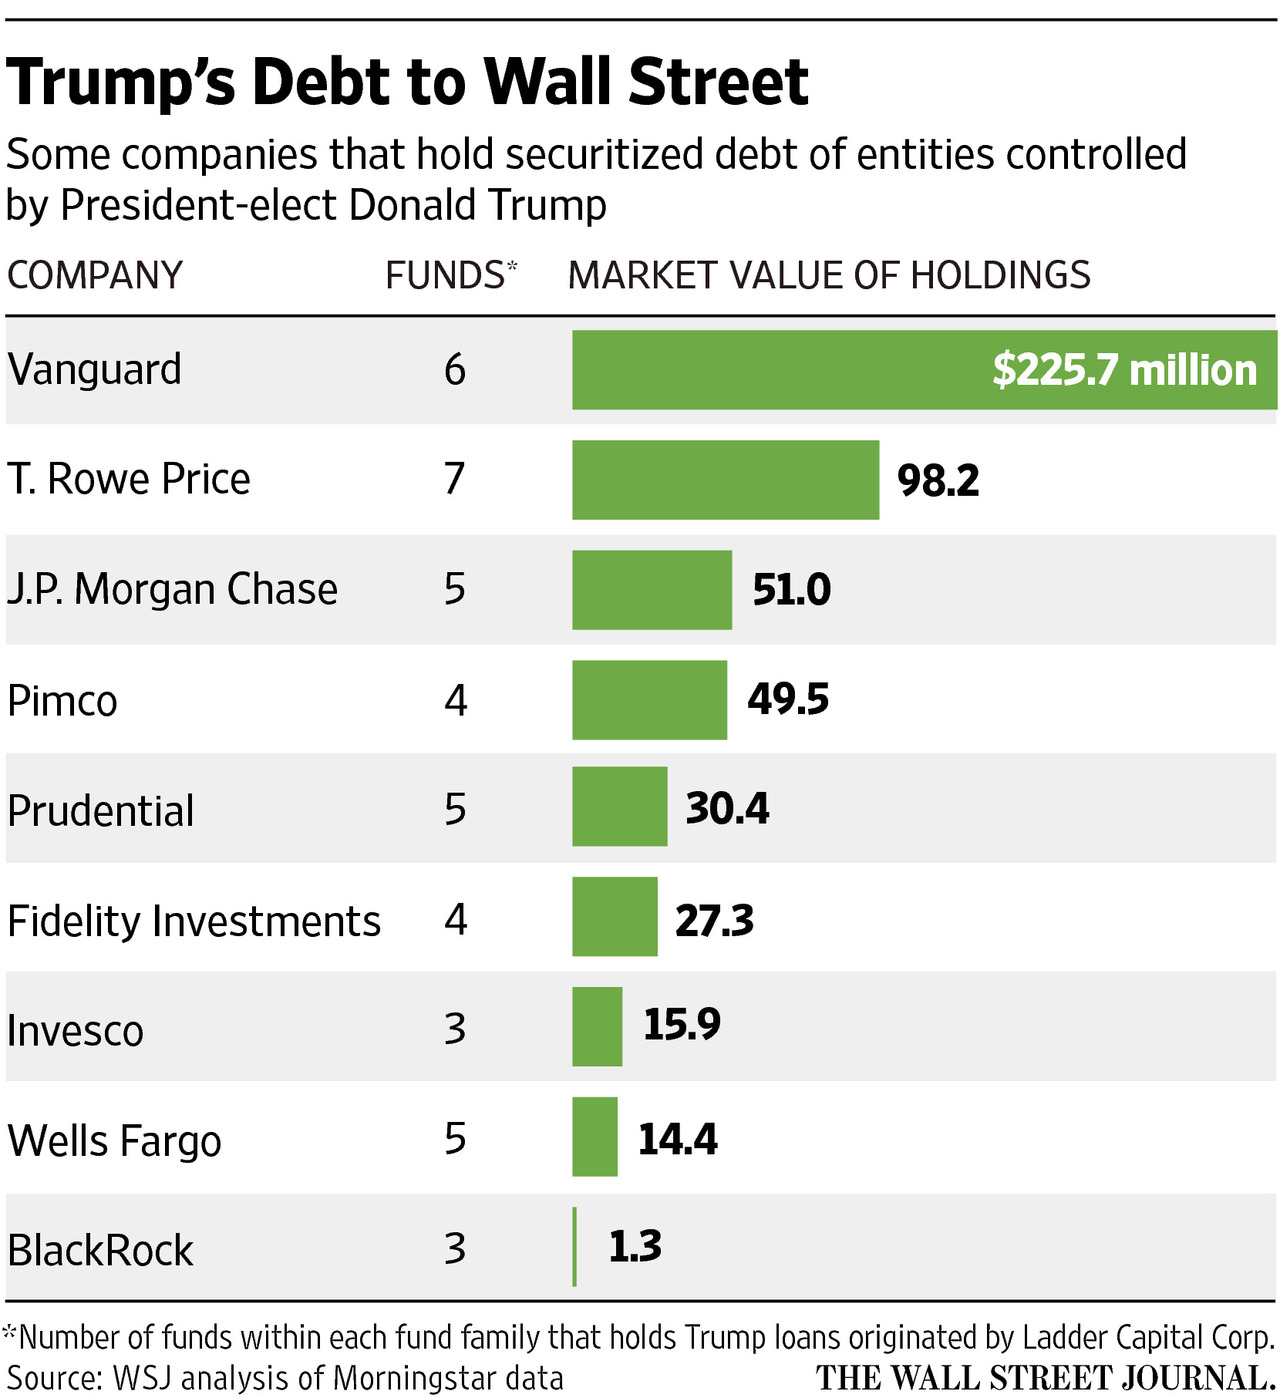 特朗普欠华尔街10亿美元债务 涉150多家机构